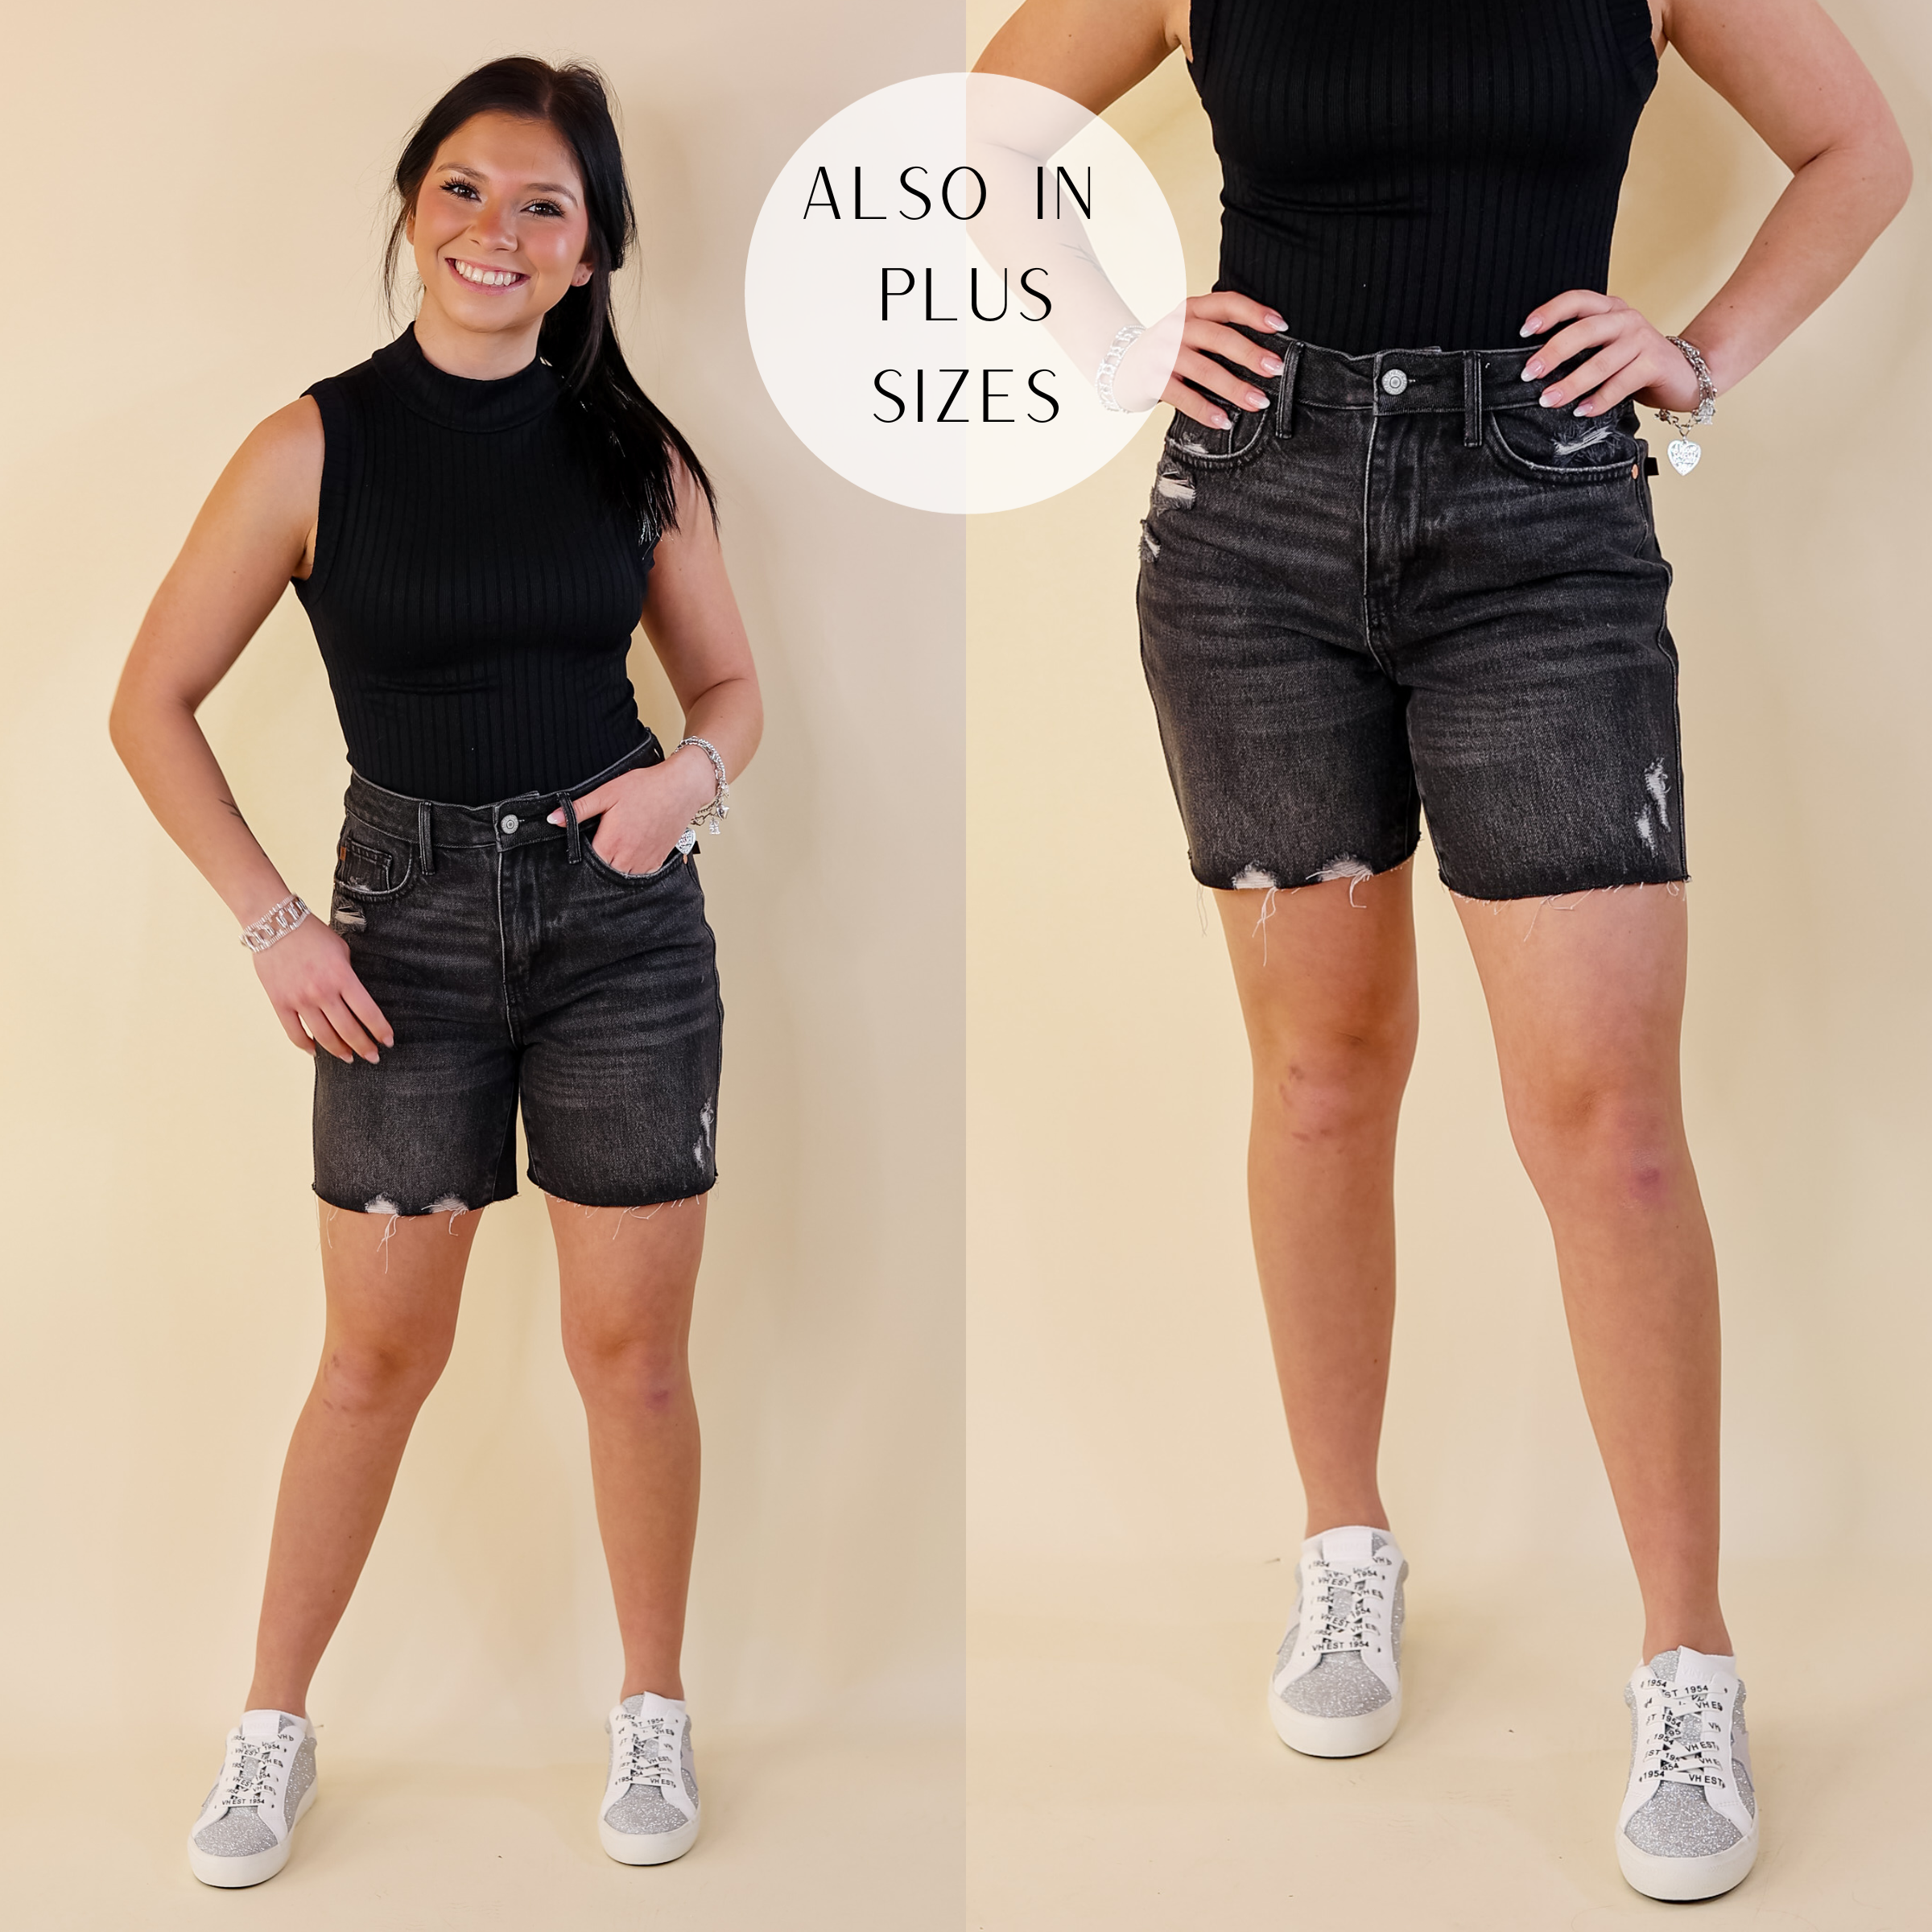 Buy Women's Slip Shorts for Under Dresses Panties (Size -26 til 32) Pack of  3 at